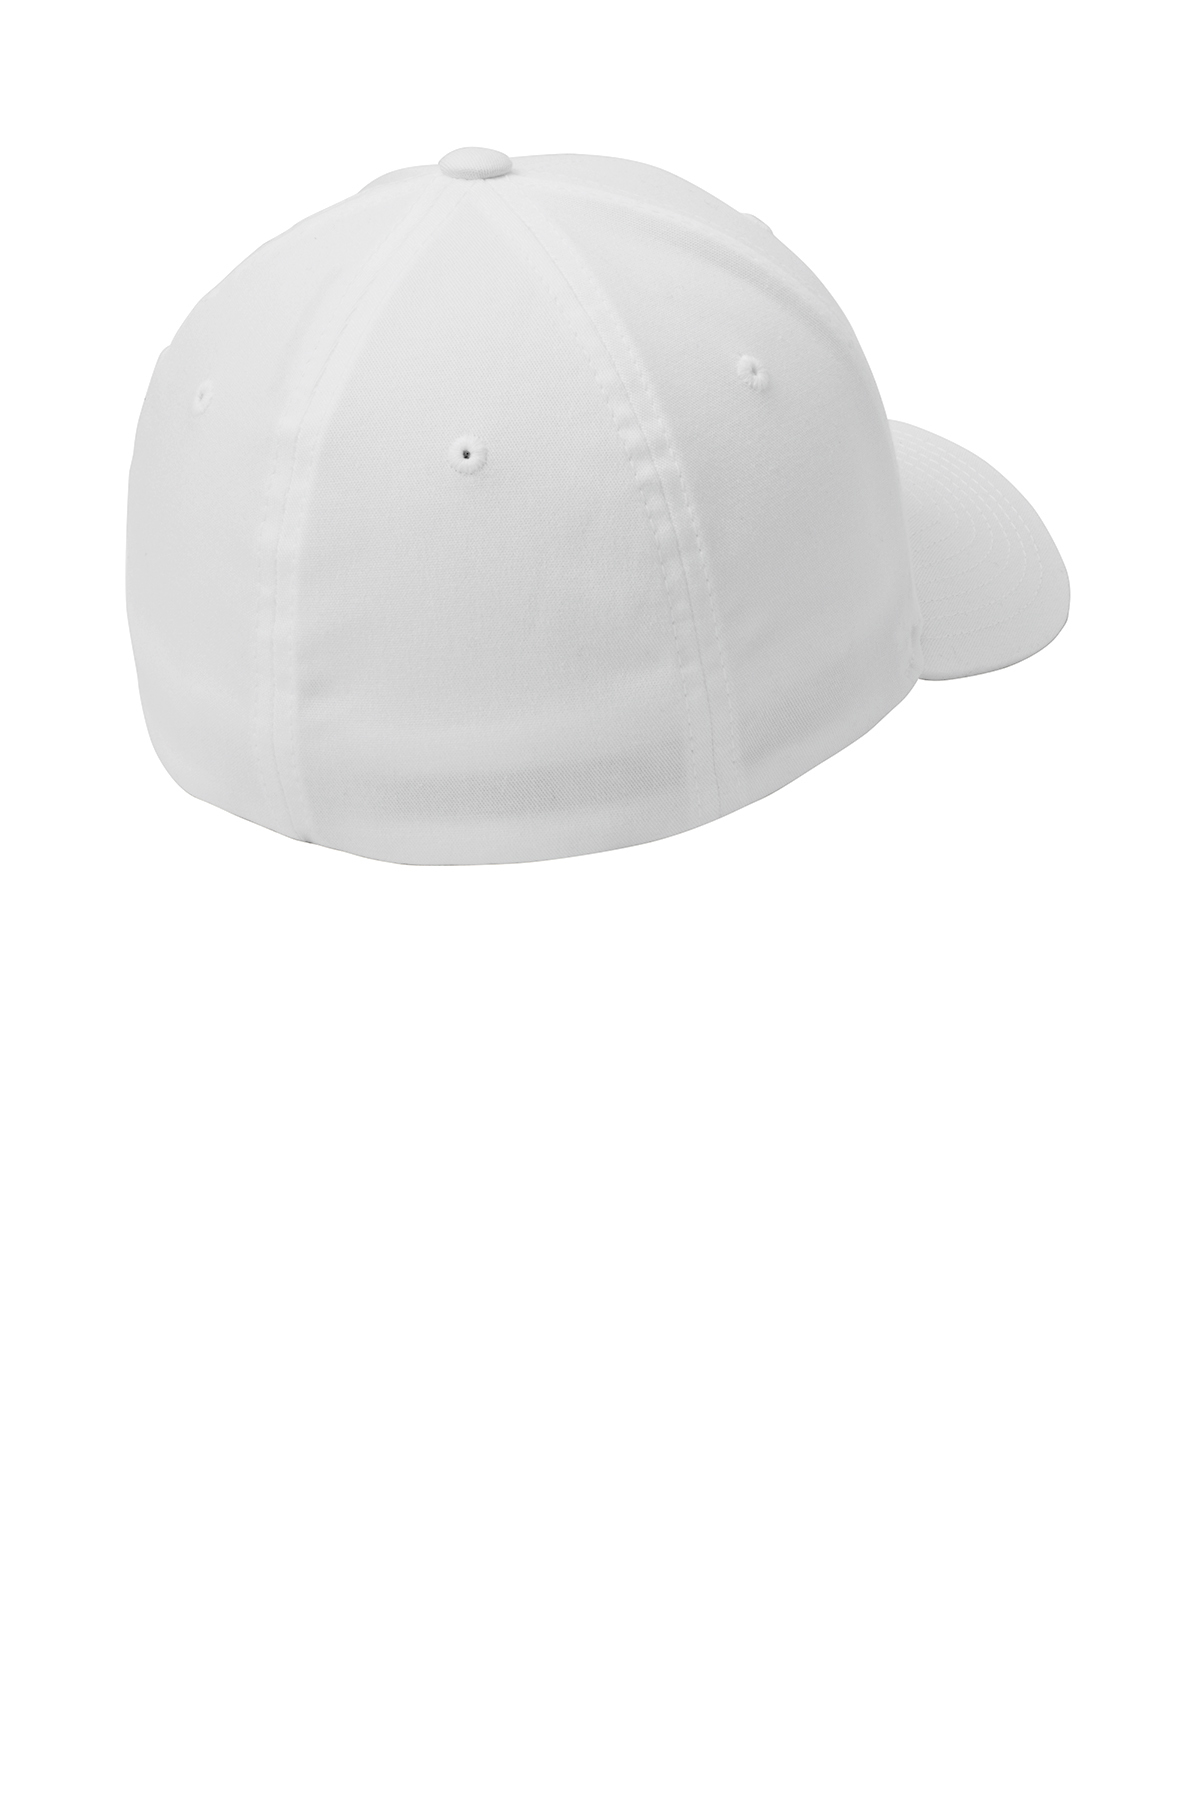 Port Authority Flexfit Cotton Twill Cap | Product | SanMar